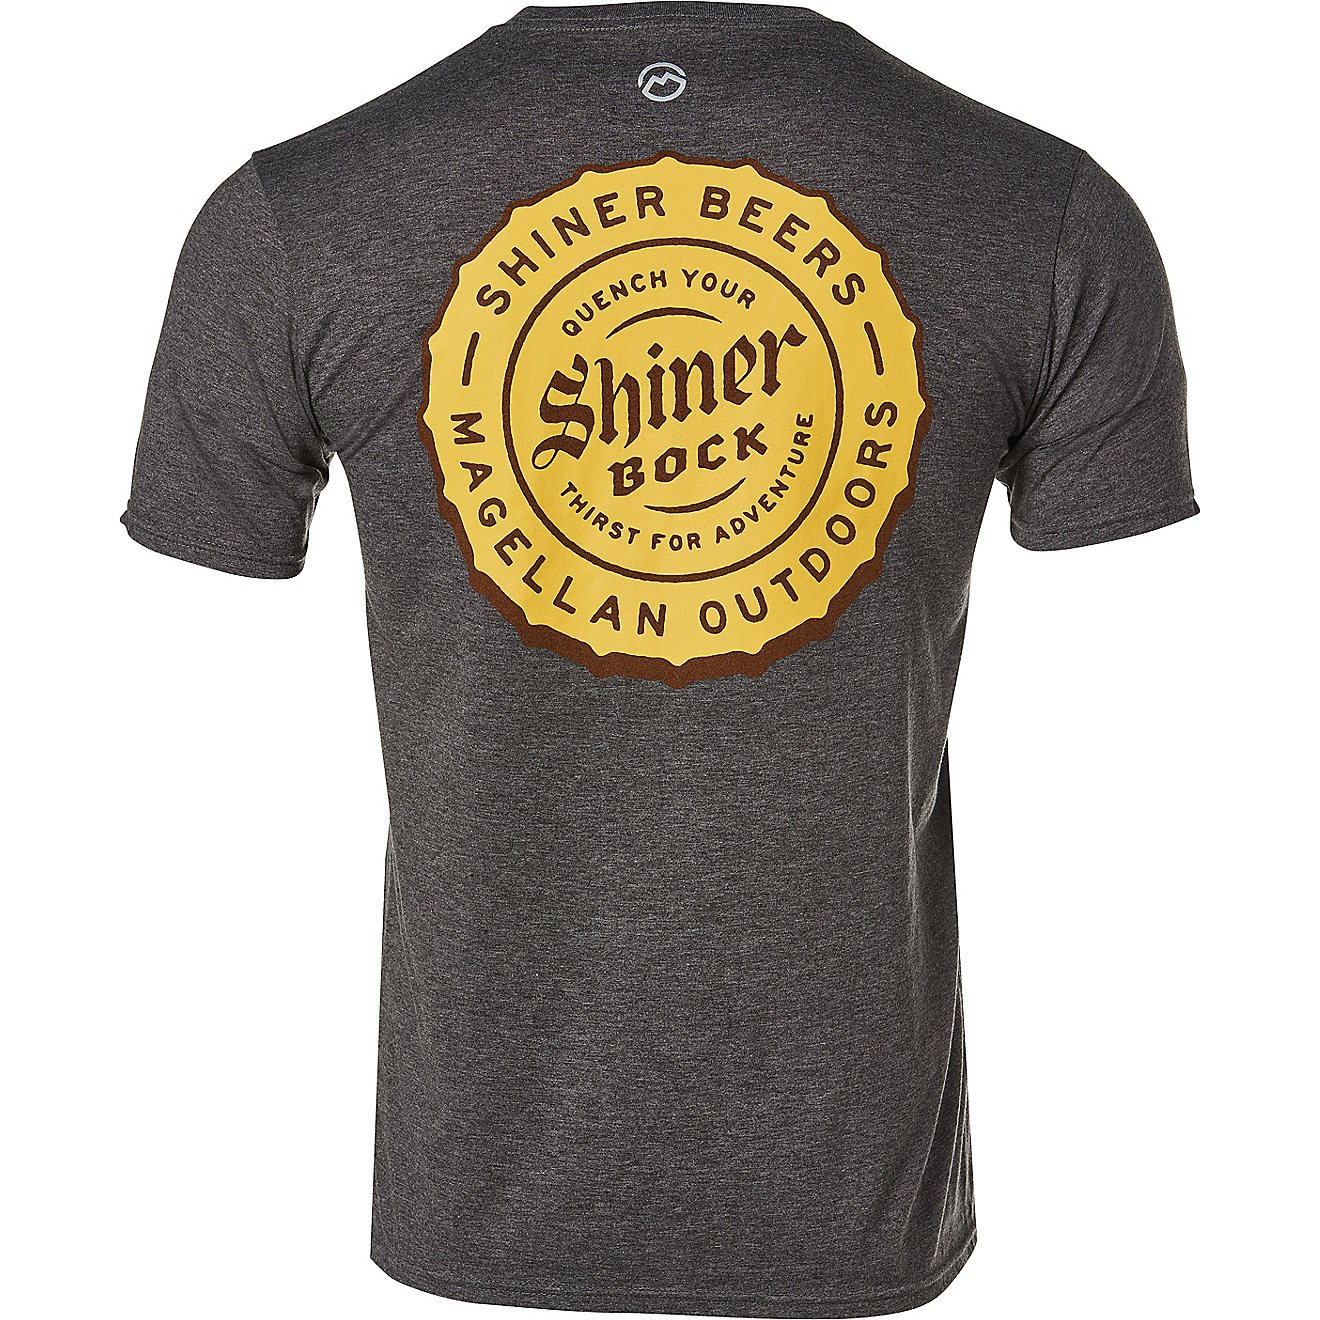 Magellan Outdoors Shiner Men's Bock Beer Bottle Cap Short Sleeve Graphic T-Shirt                                                 - view number 1